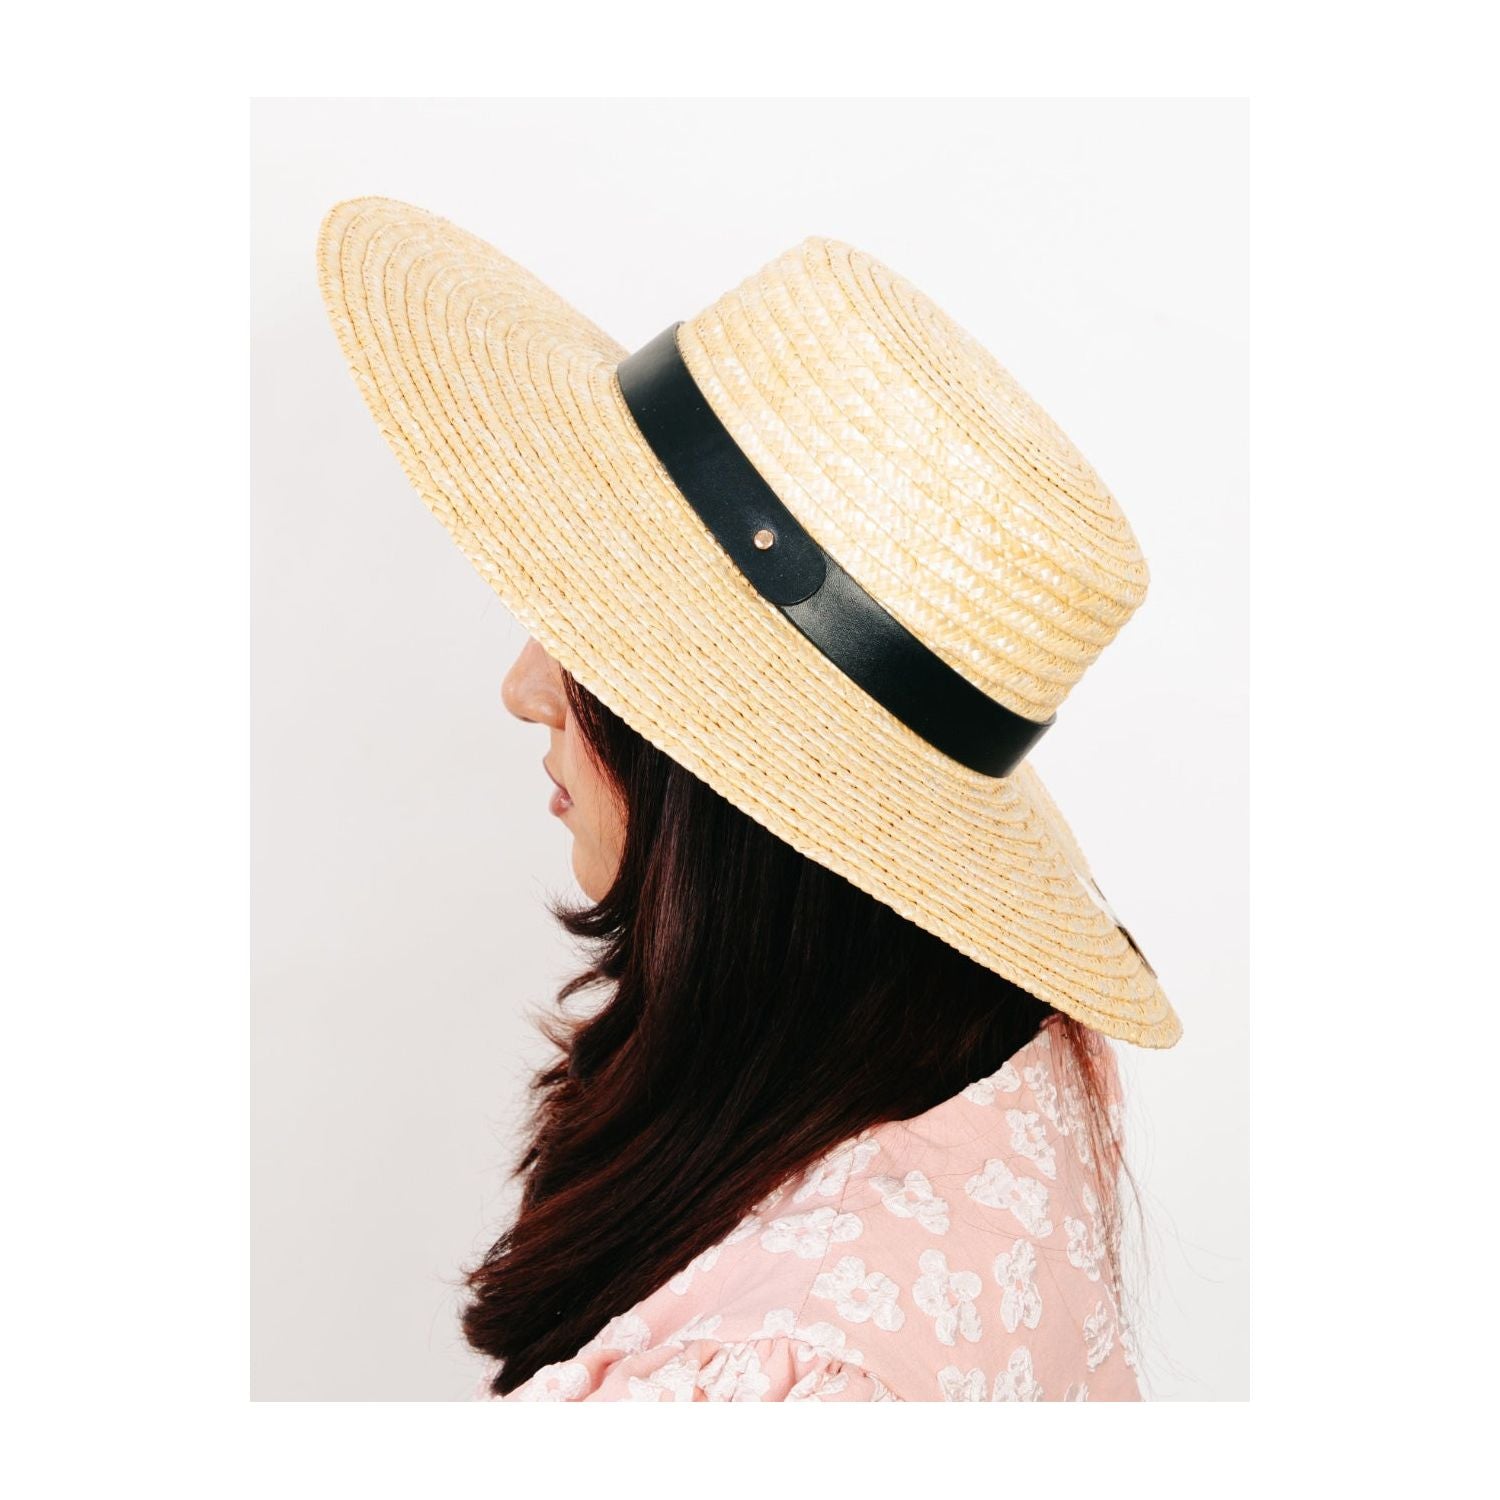 Fame Flat Brim Straw Weave Hat - TiffanyzKlozet